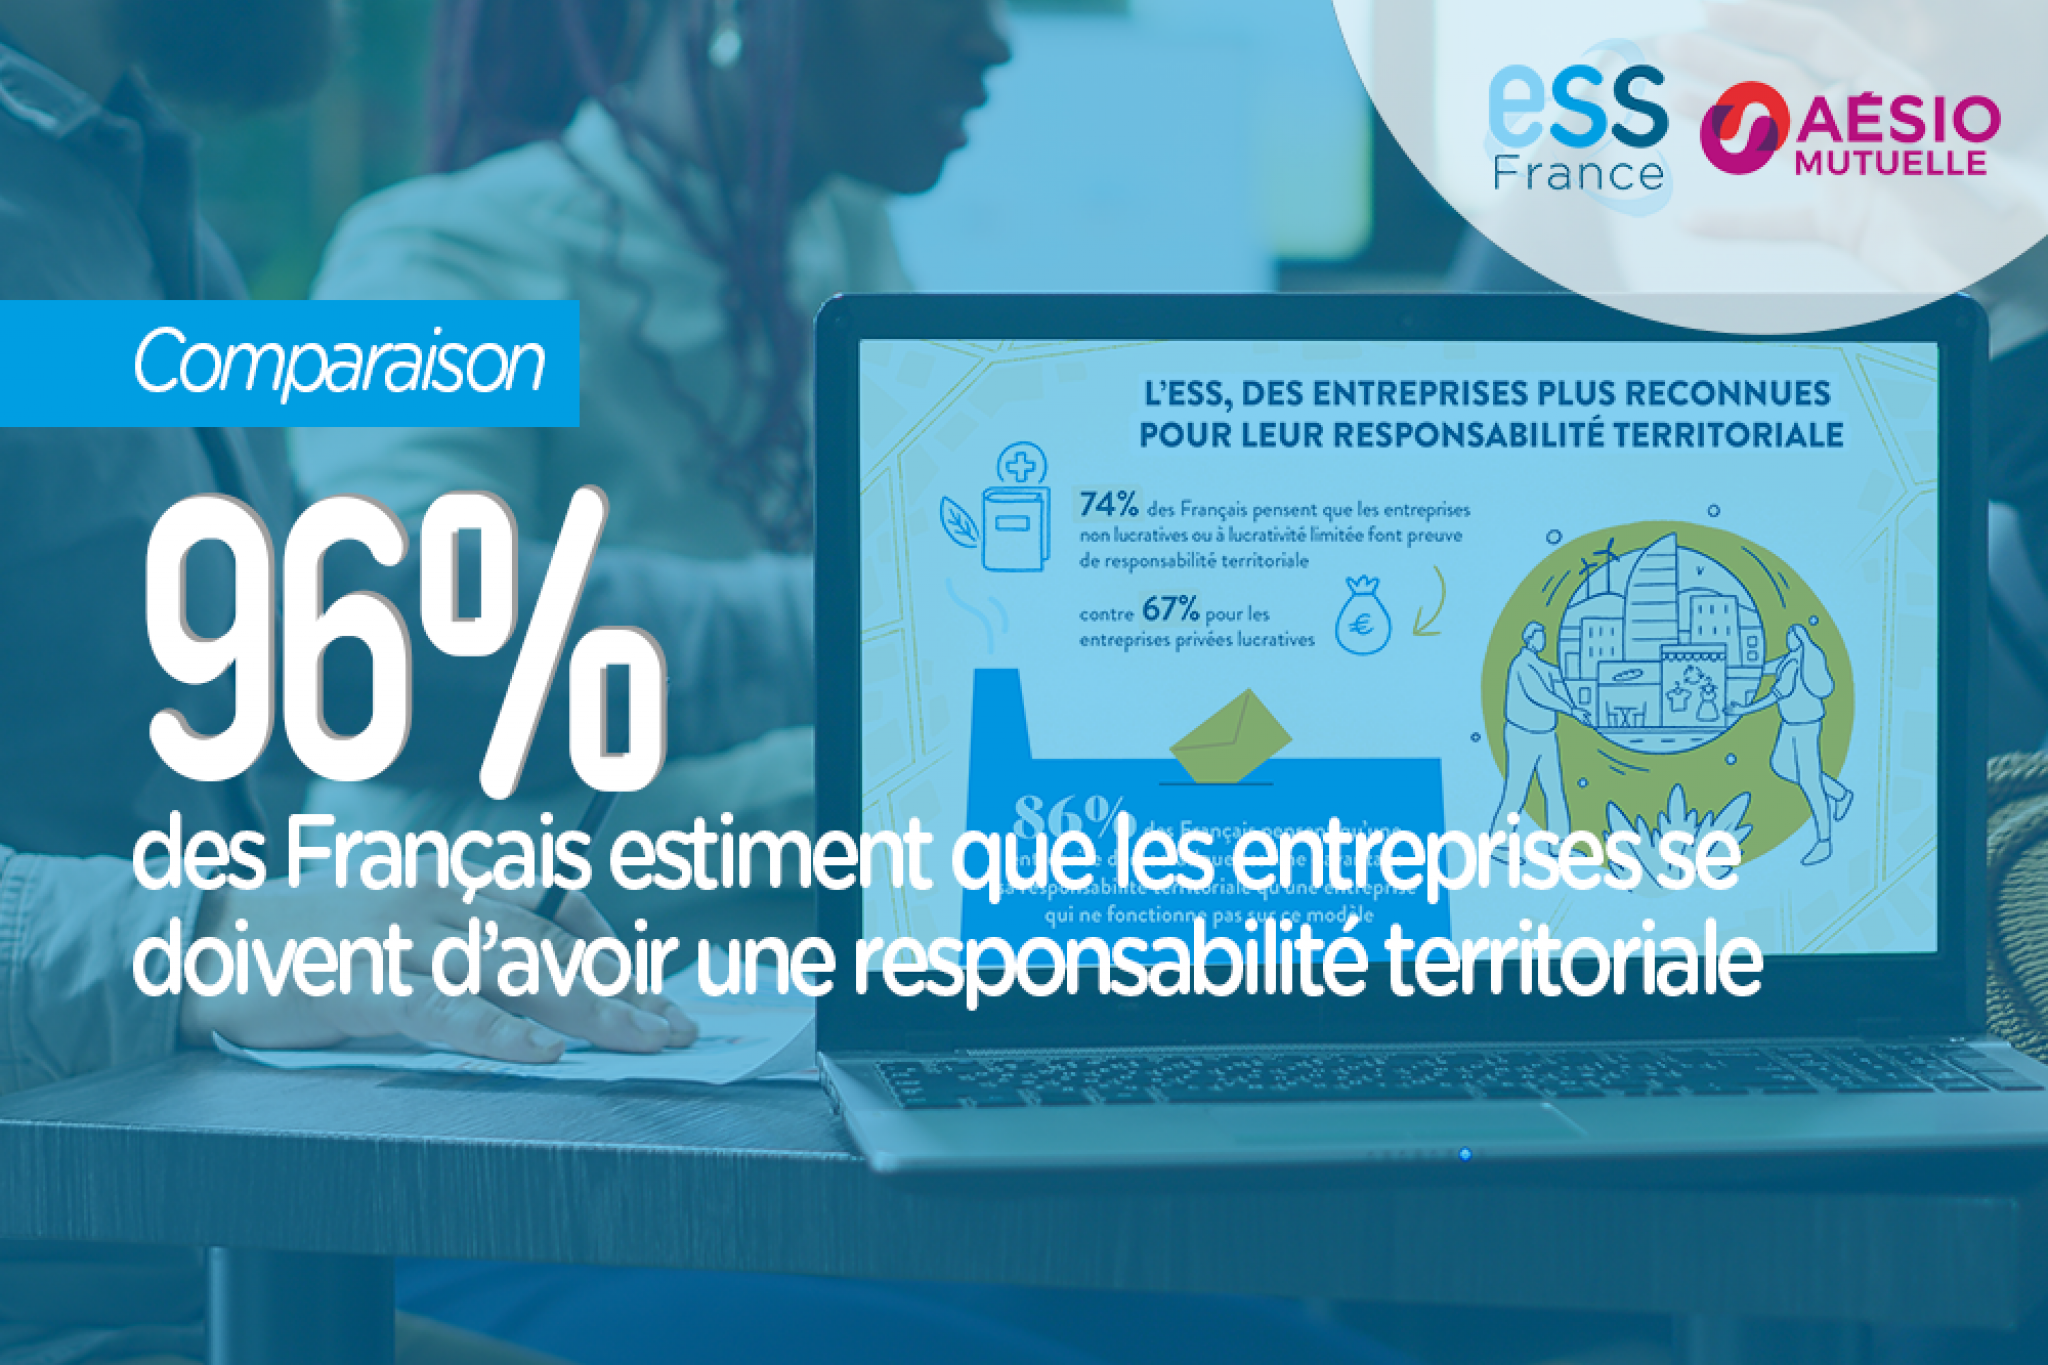 96% des Français estiment que les entreprises doivent avoir une responsabilité territoriale